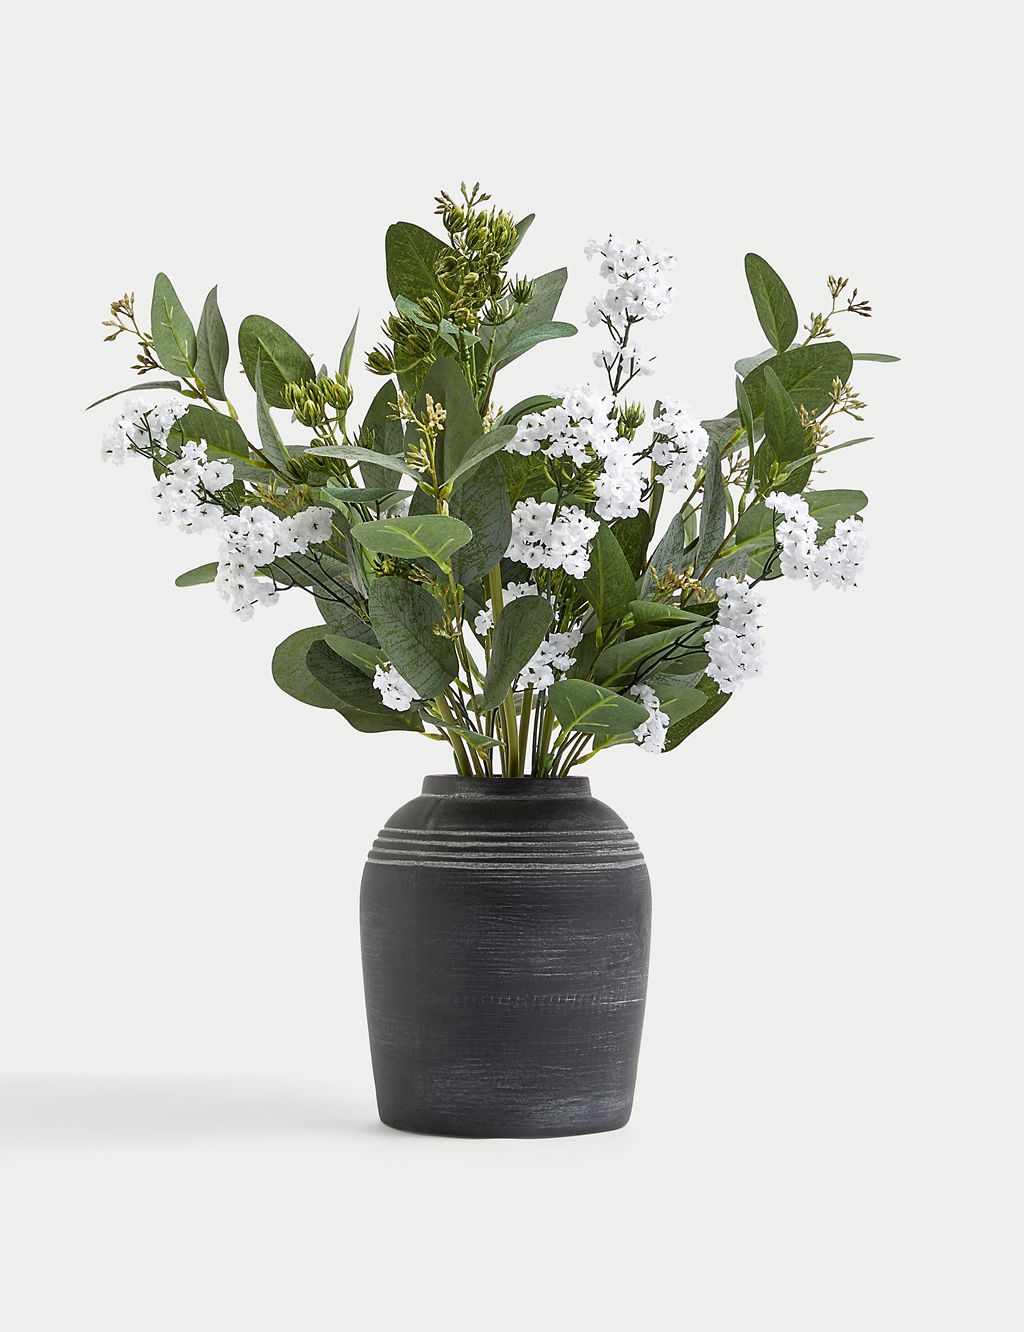 Artificial Flower Arrangement in Vase 3 of 3